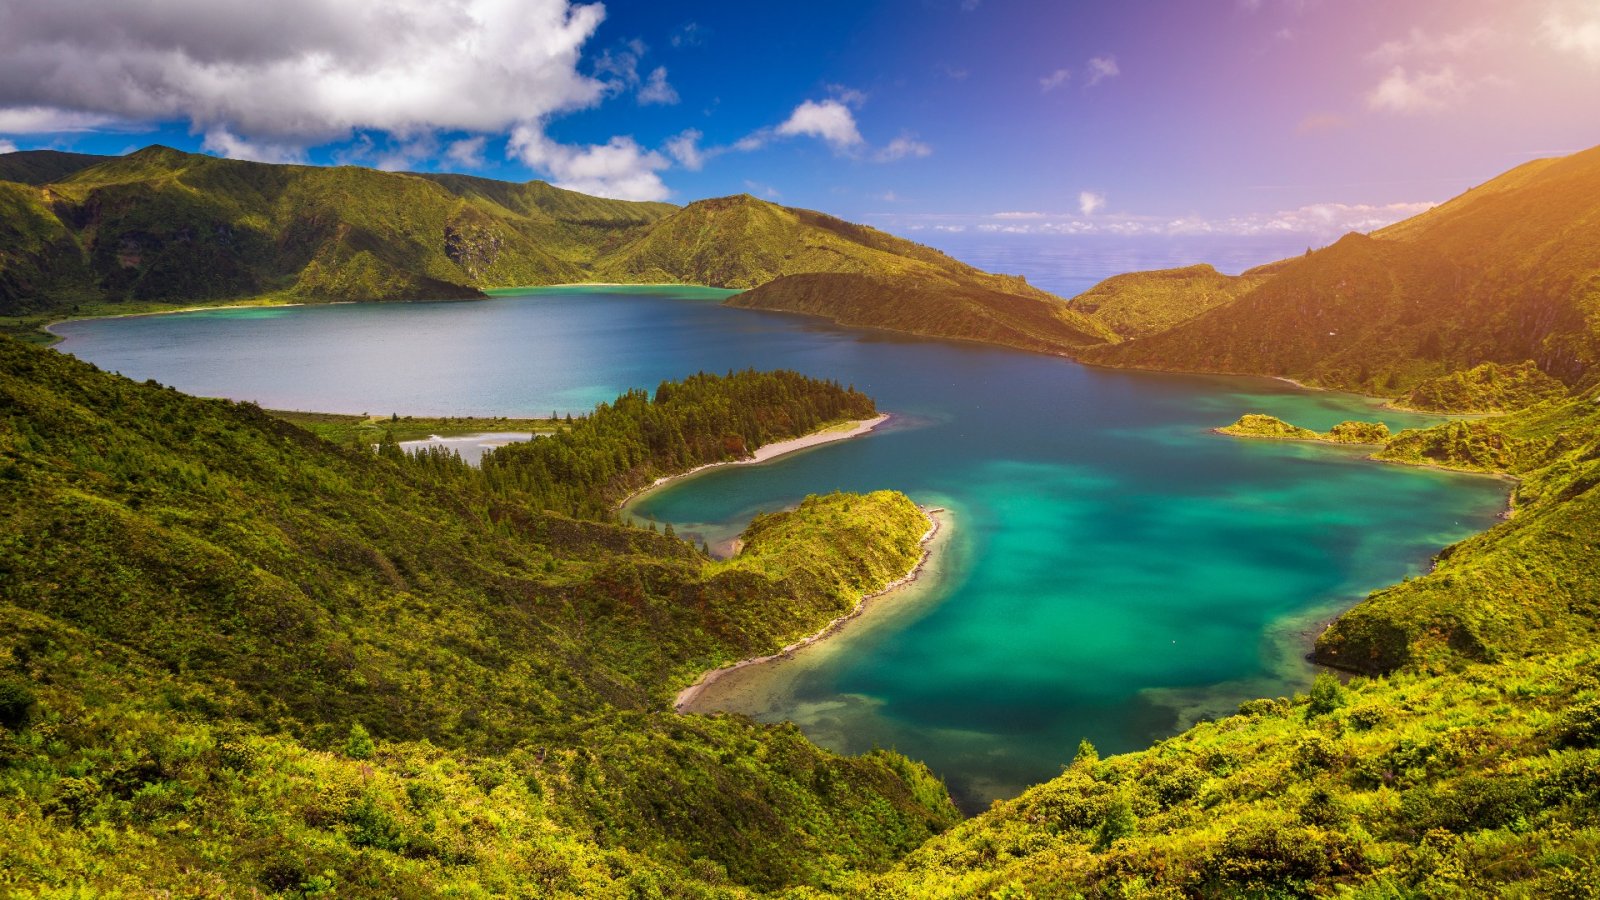 4 جزر آسر في جزر الأزور تستحق الزيارة في عام 2023 لخوض مغامرات رائعة